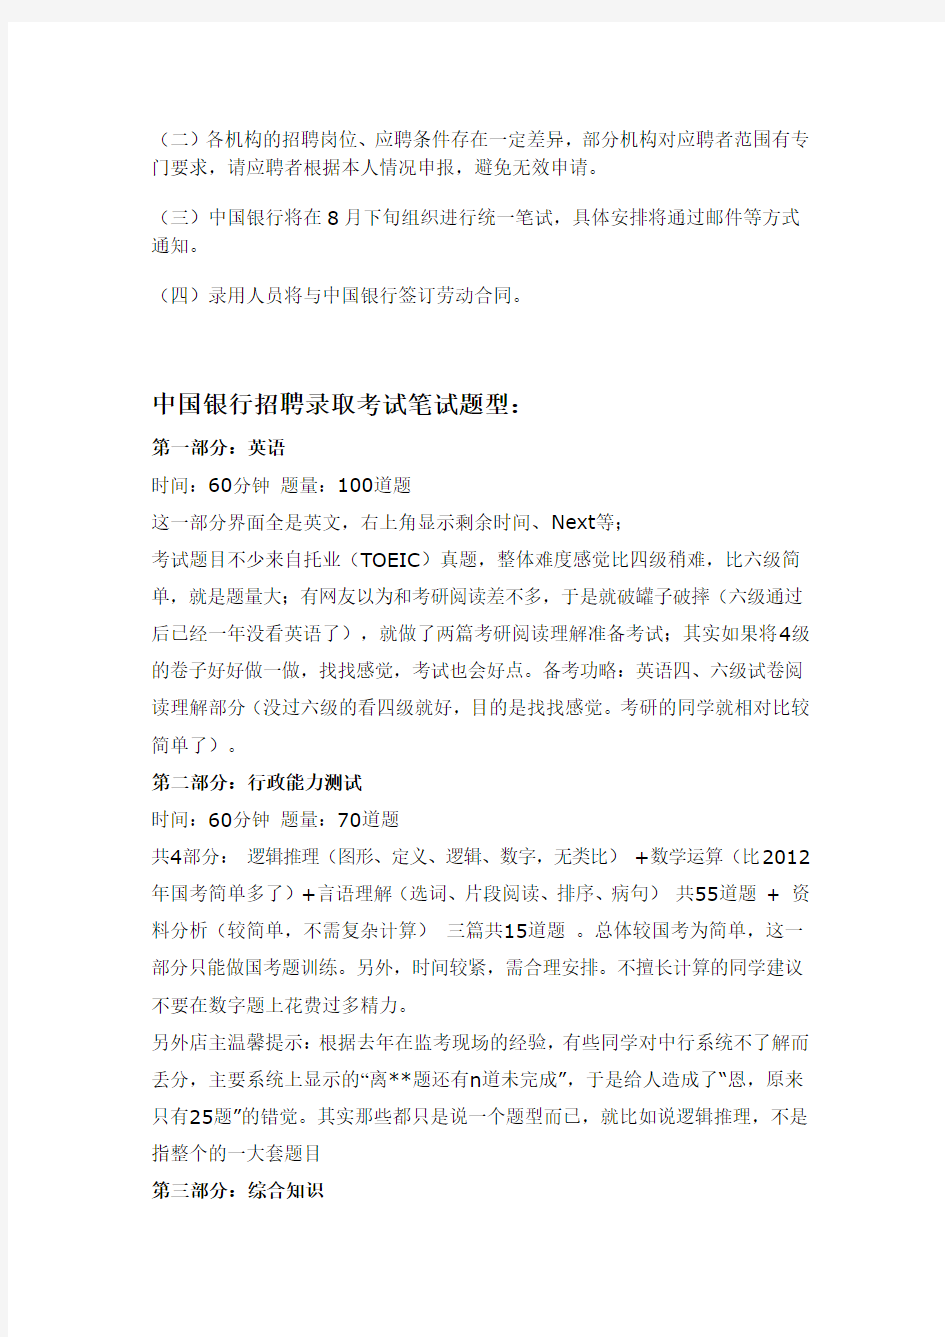 2014年中国银行夏季招聘柜员招聘考试笔试内容试题试卷历年考试真题